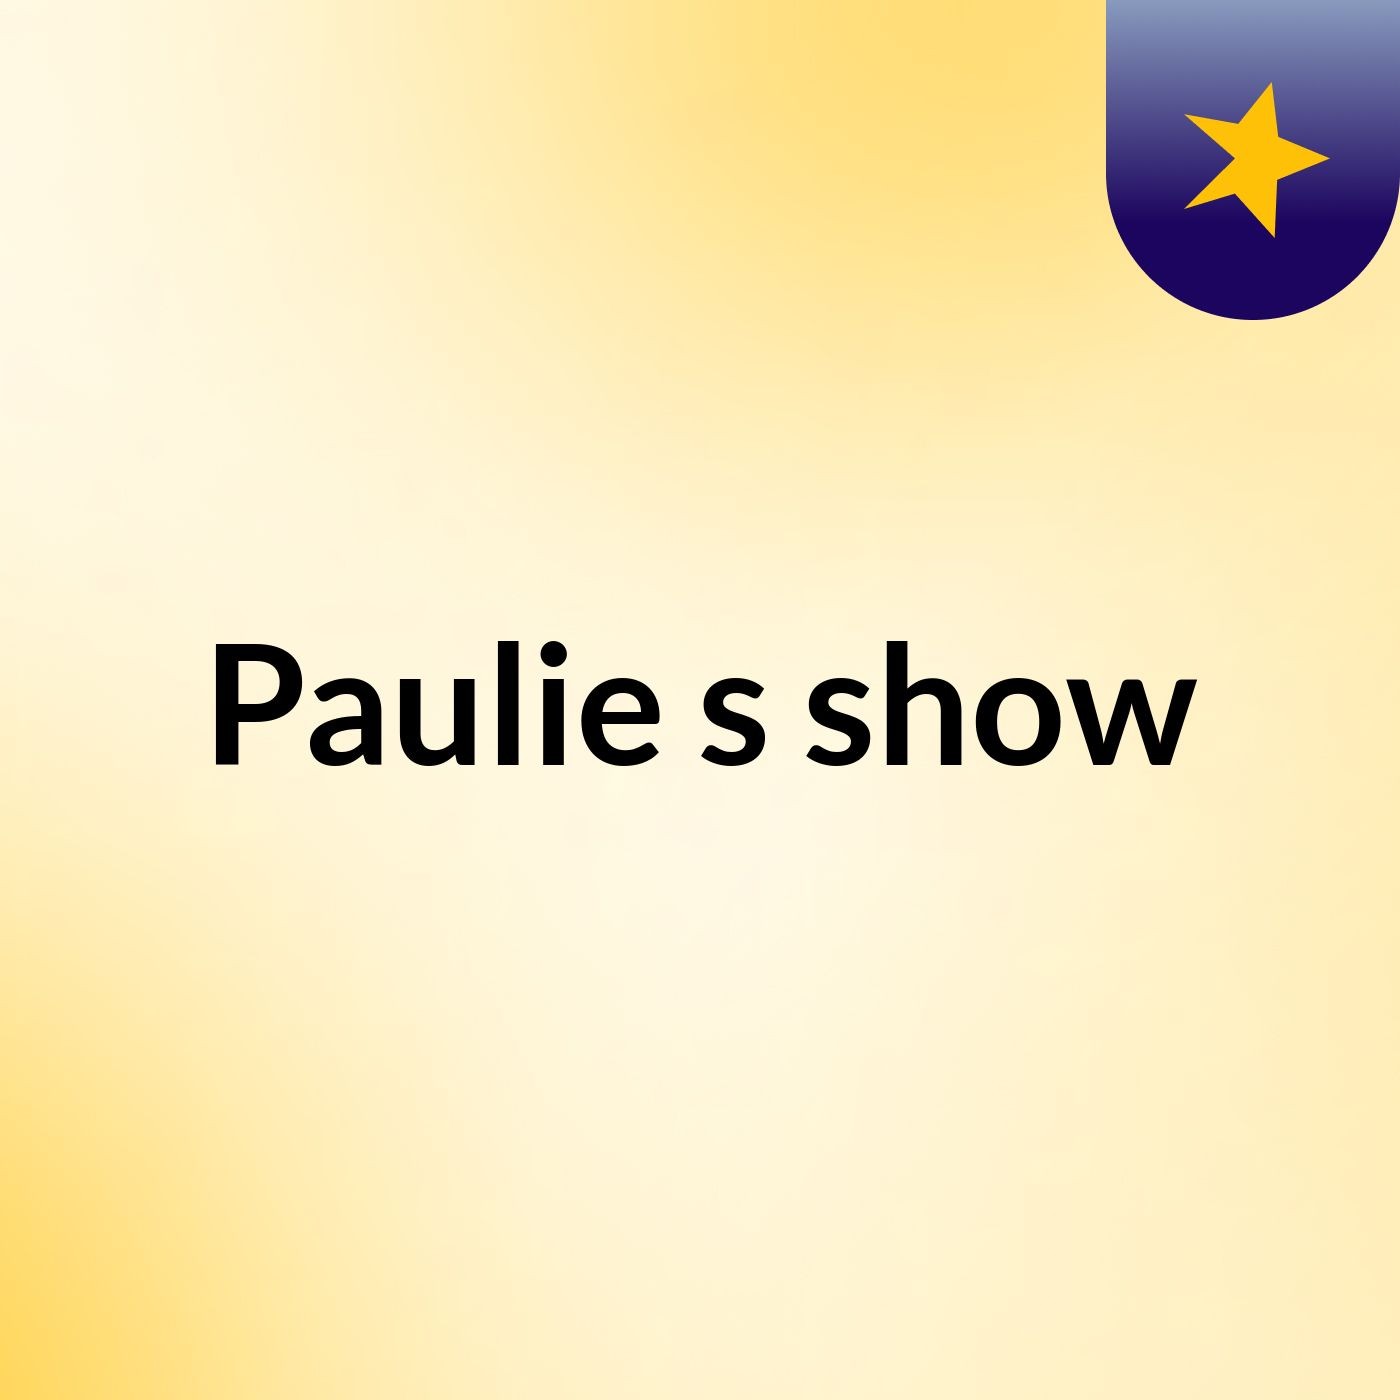 Paulie's show